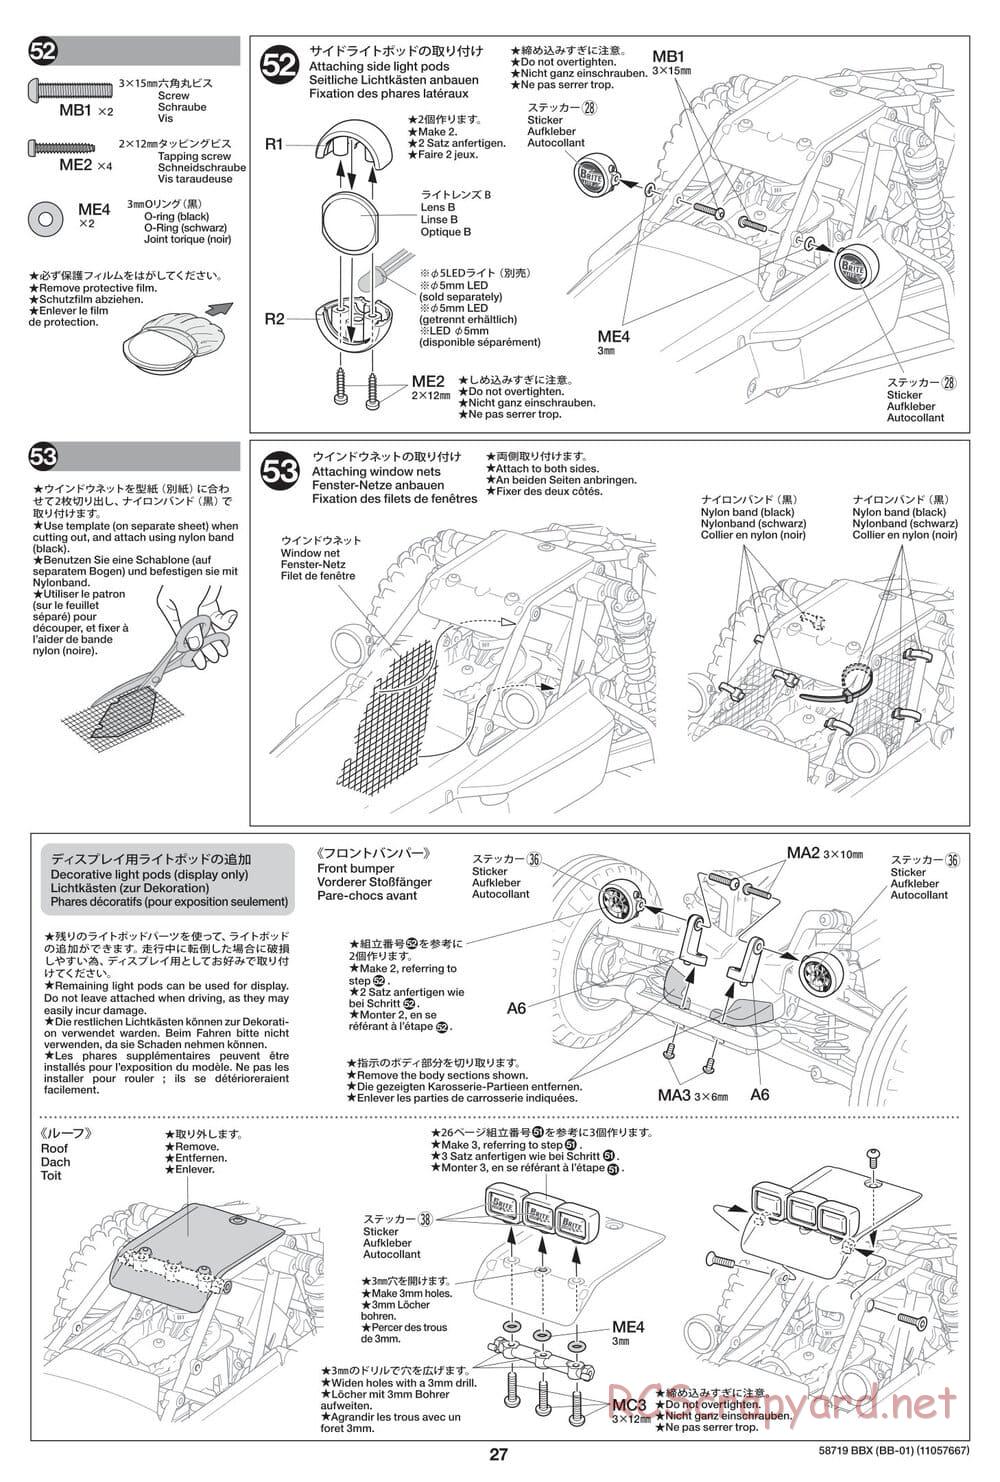 Tamiya - BBX - BB-01 Chassis - Manual - Page 27